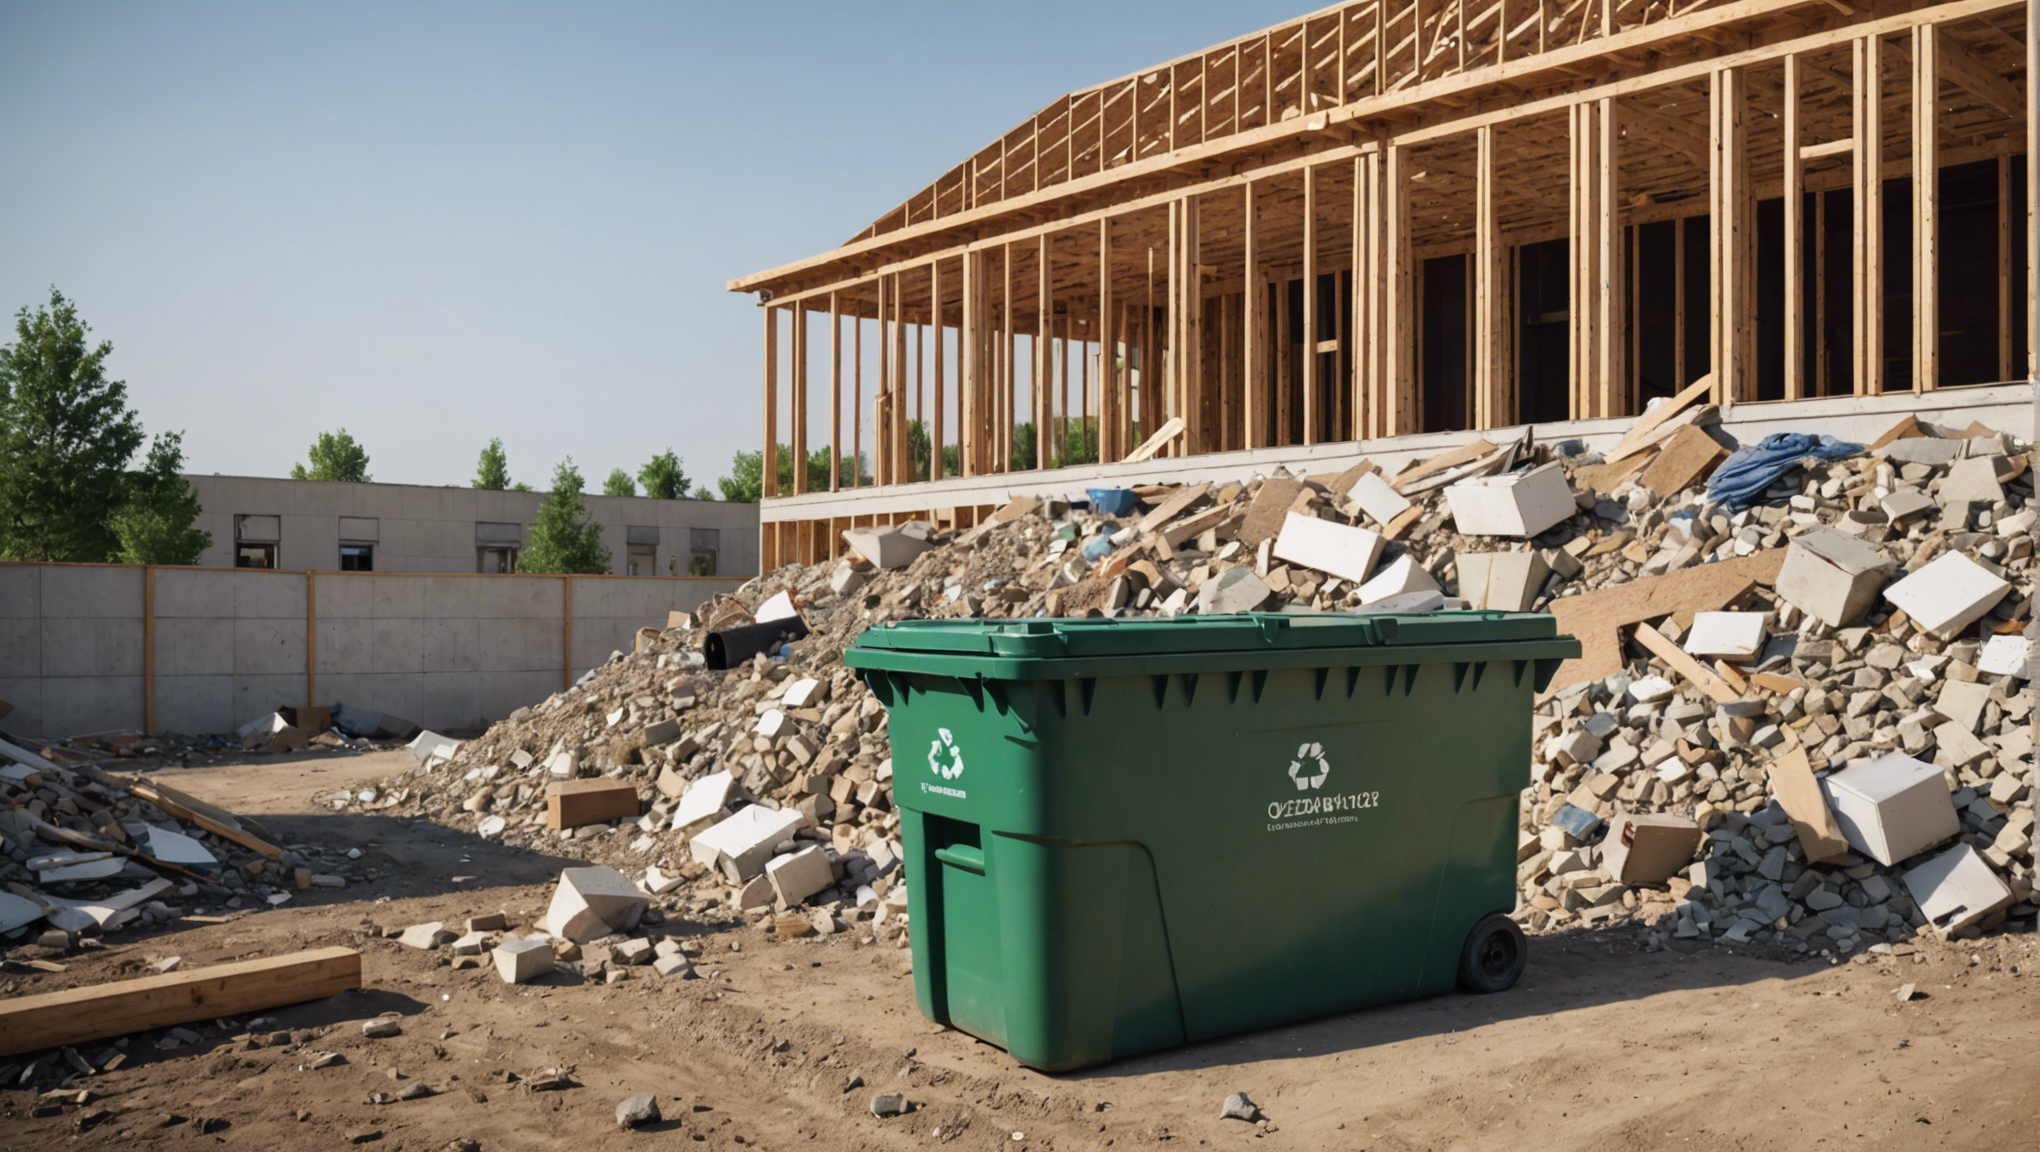 découvrez comment améliorer la gestion des déchets dans la construction d'une maison et contribuer à la préservation de l'environnement.